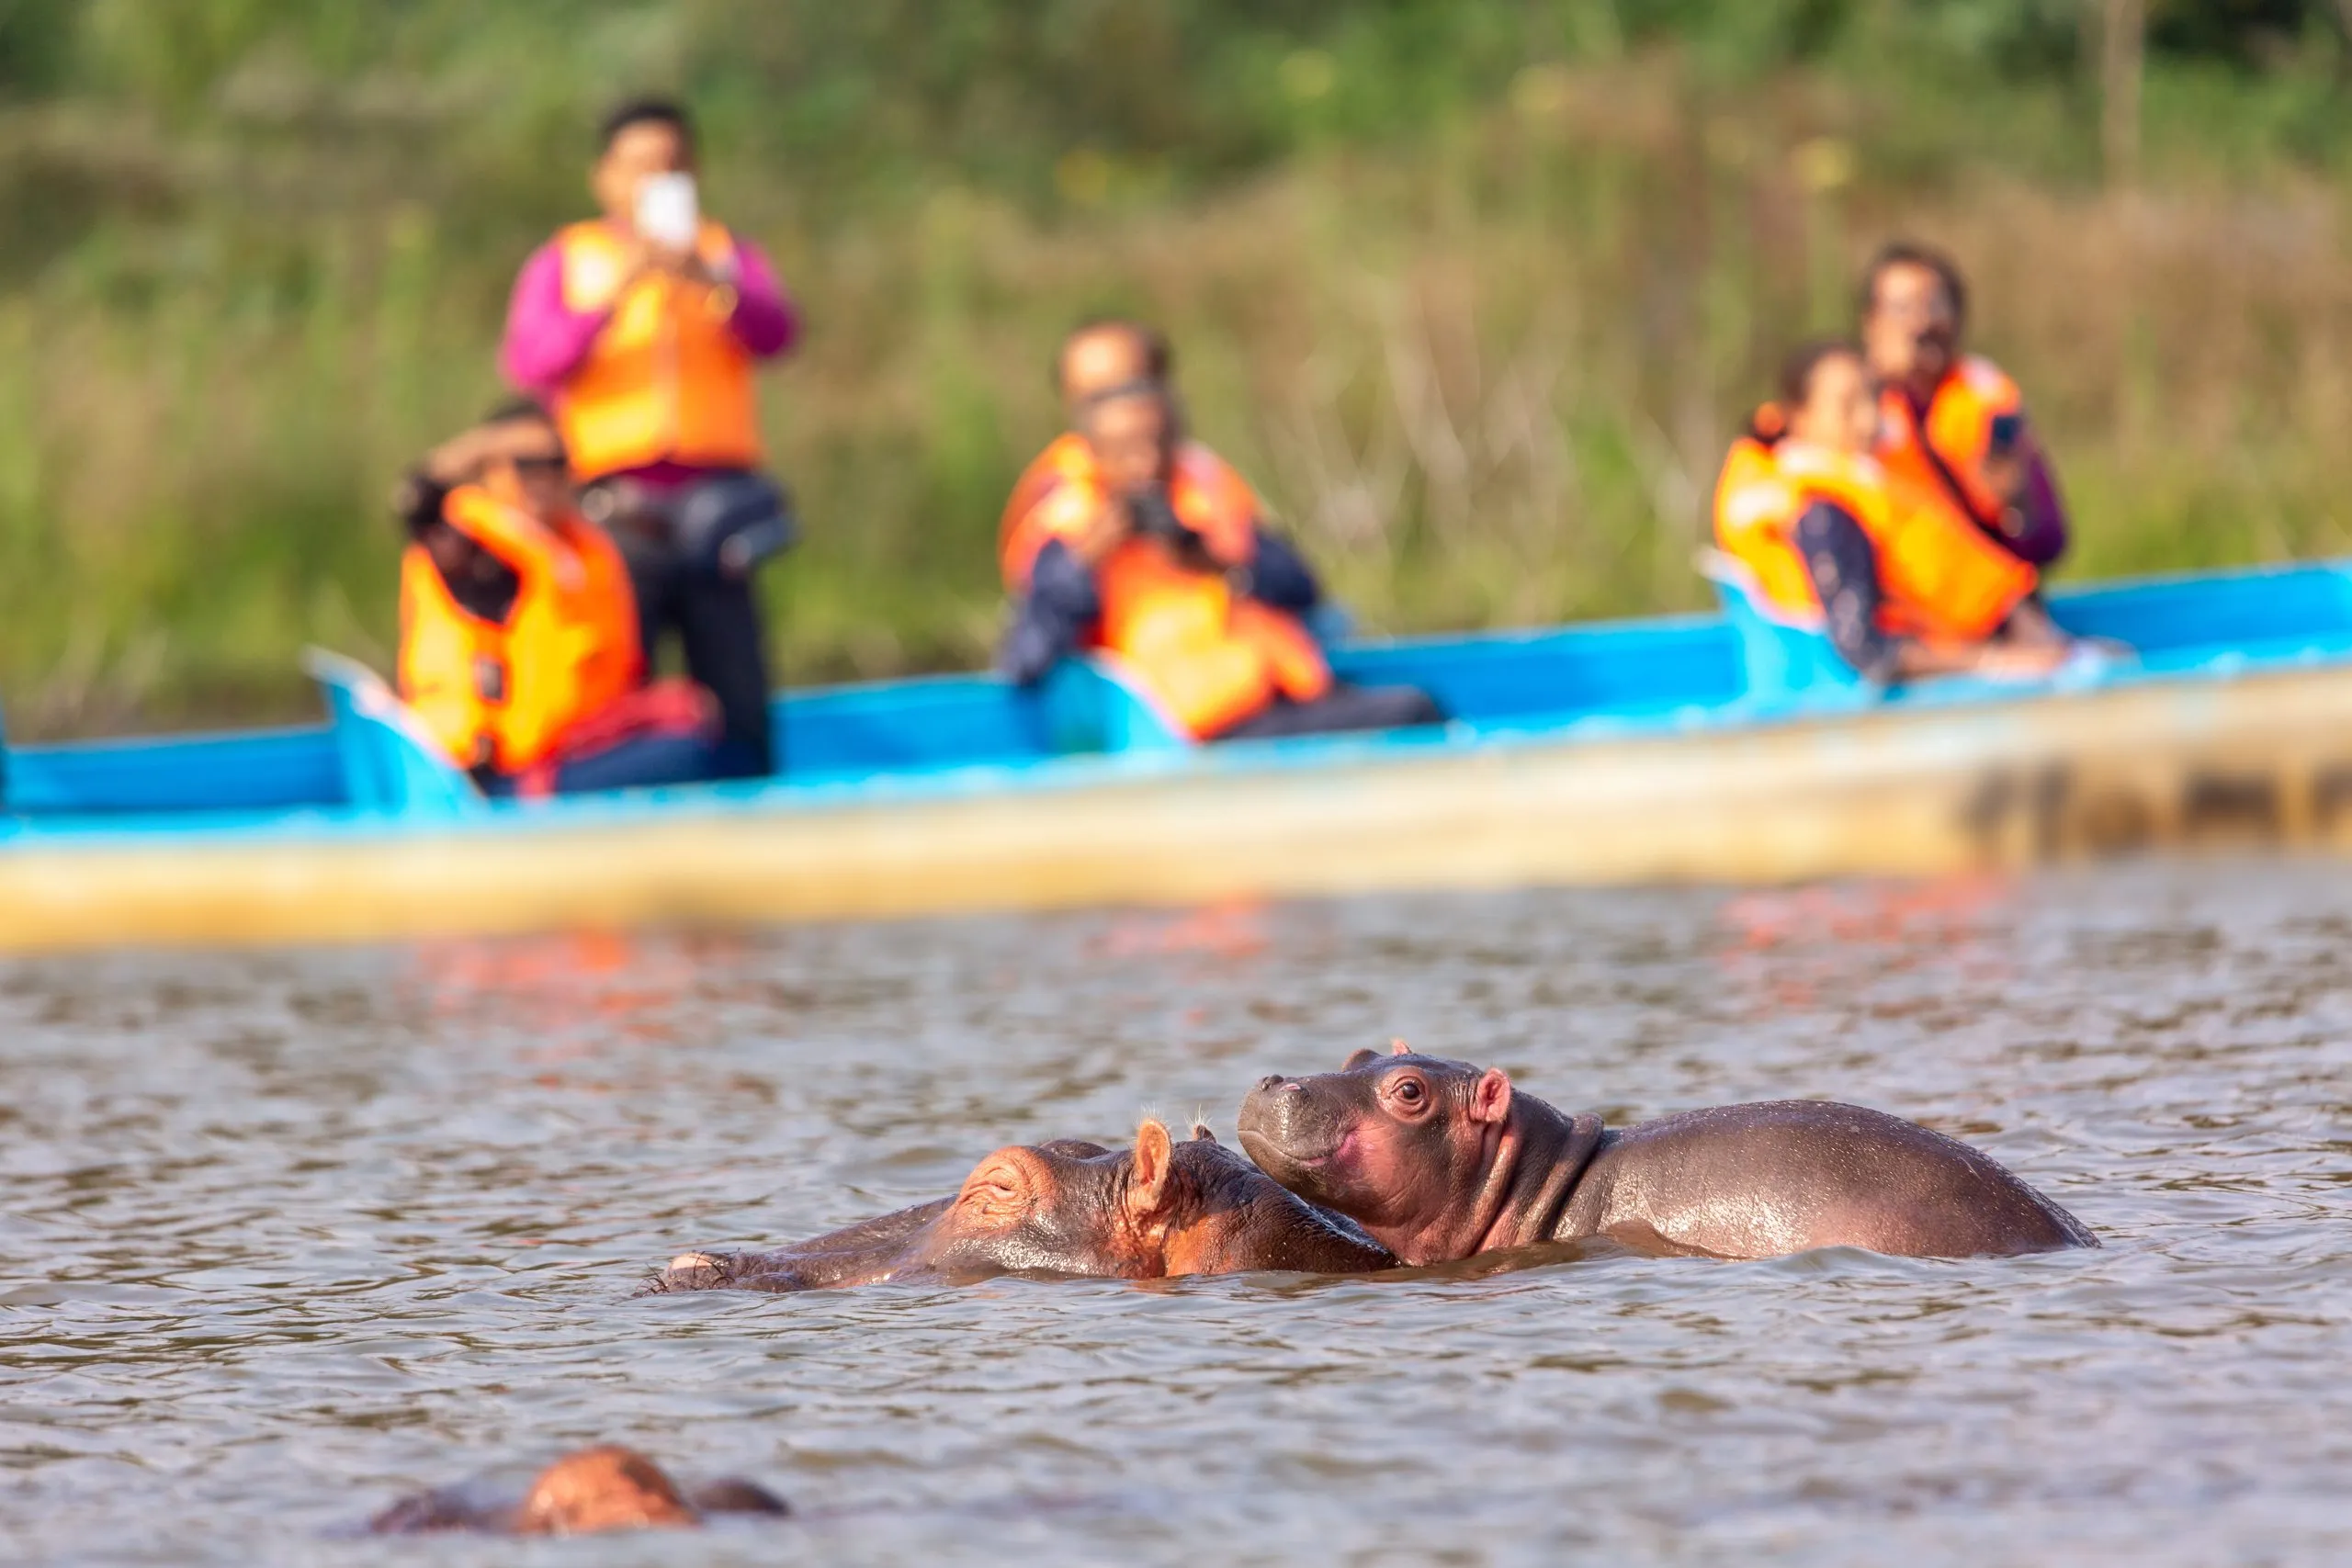 Hipopótamo no lago Naivasha contra barco com turistas. Turismo no Quénia.